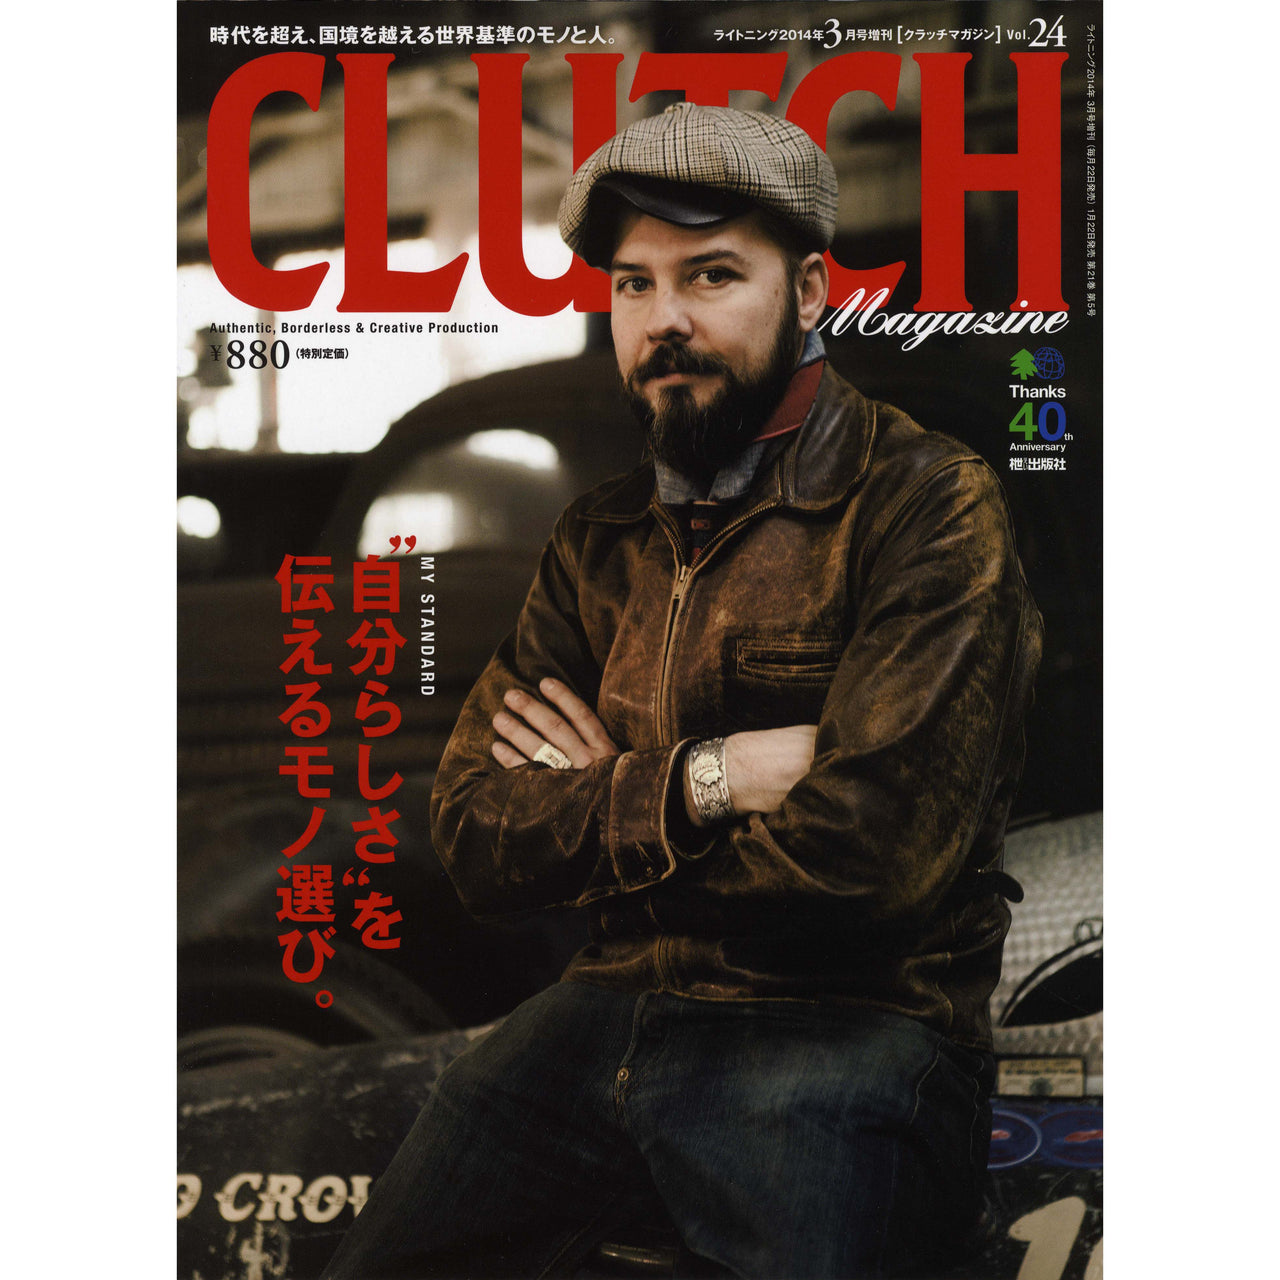 Clutch Magazine Vol.24-Clutch Cafe